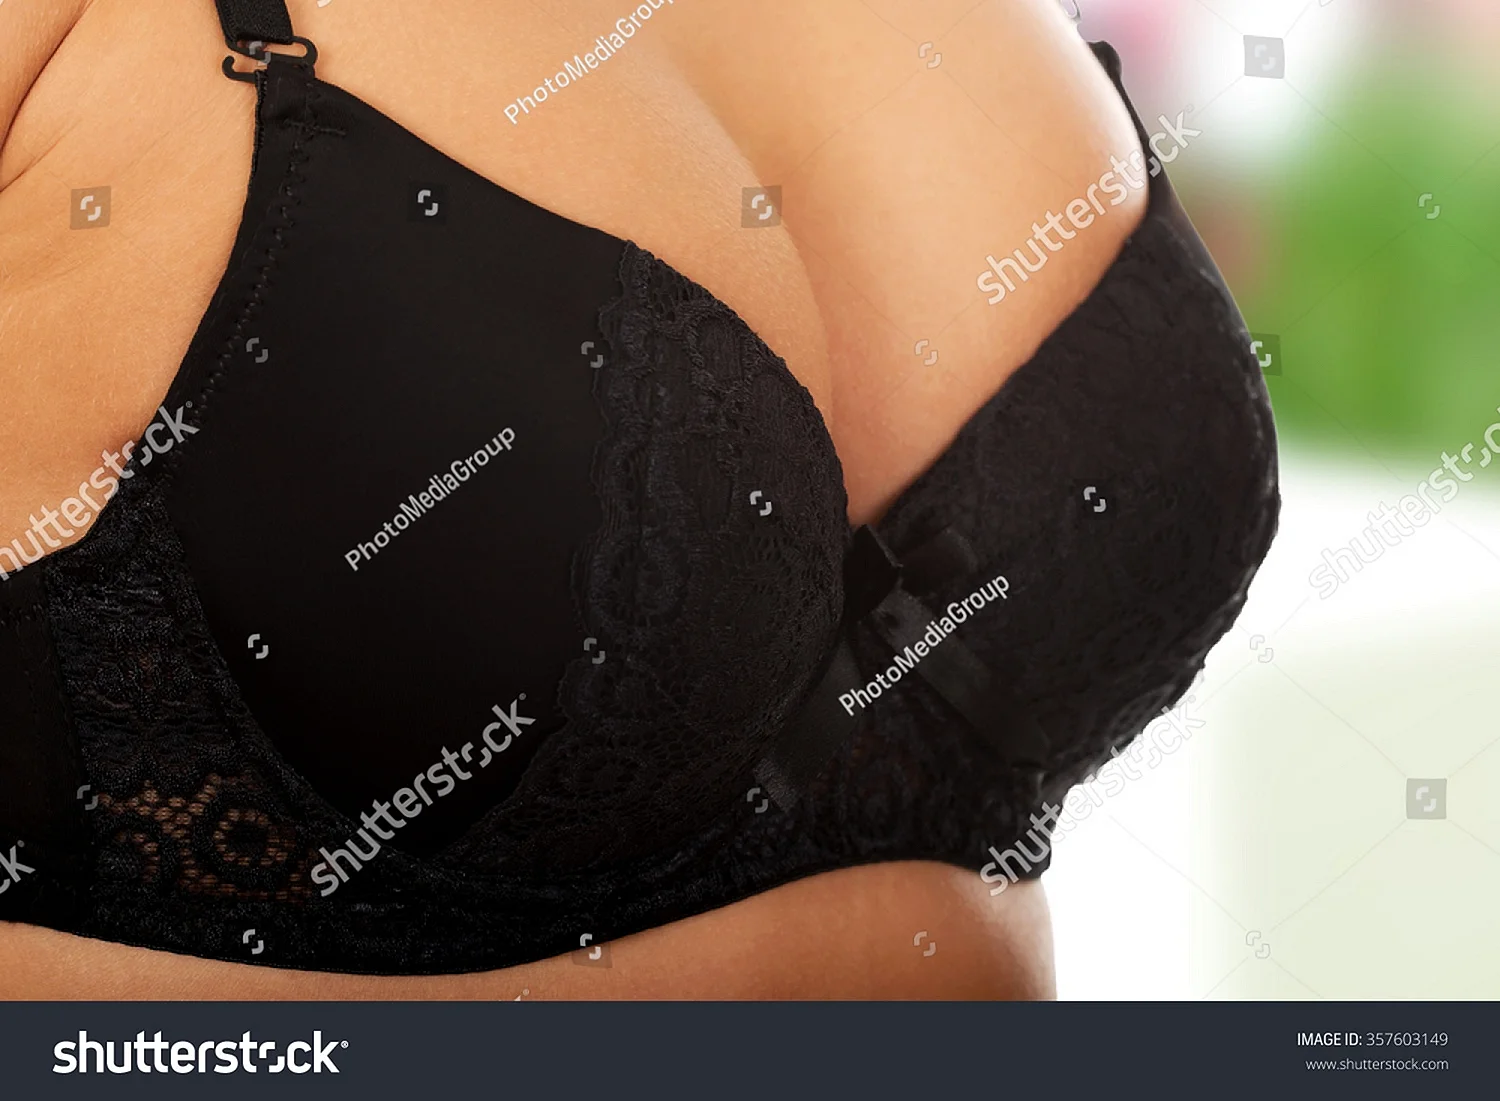 Женская грудь в черном лифчике